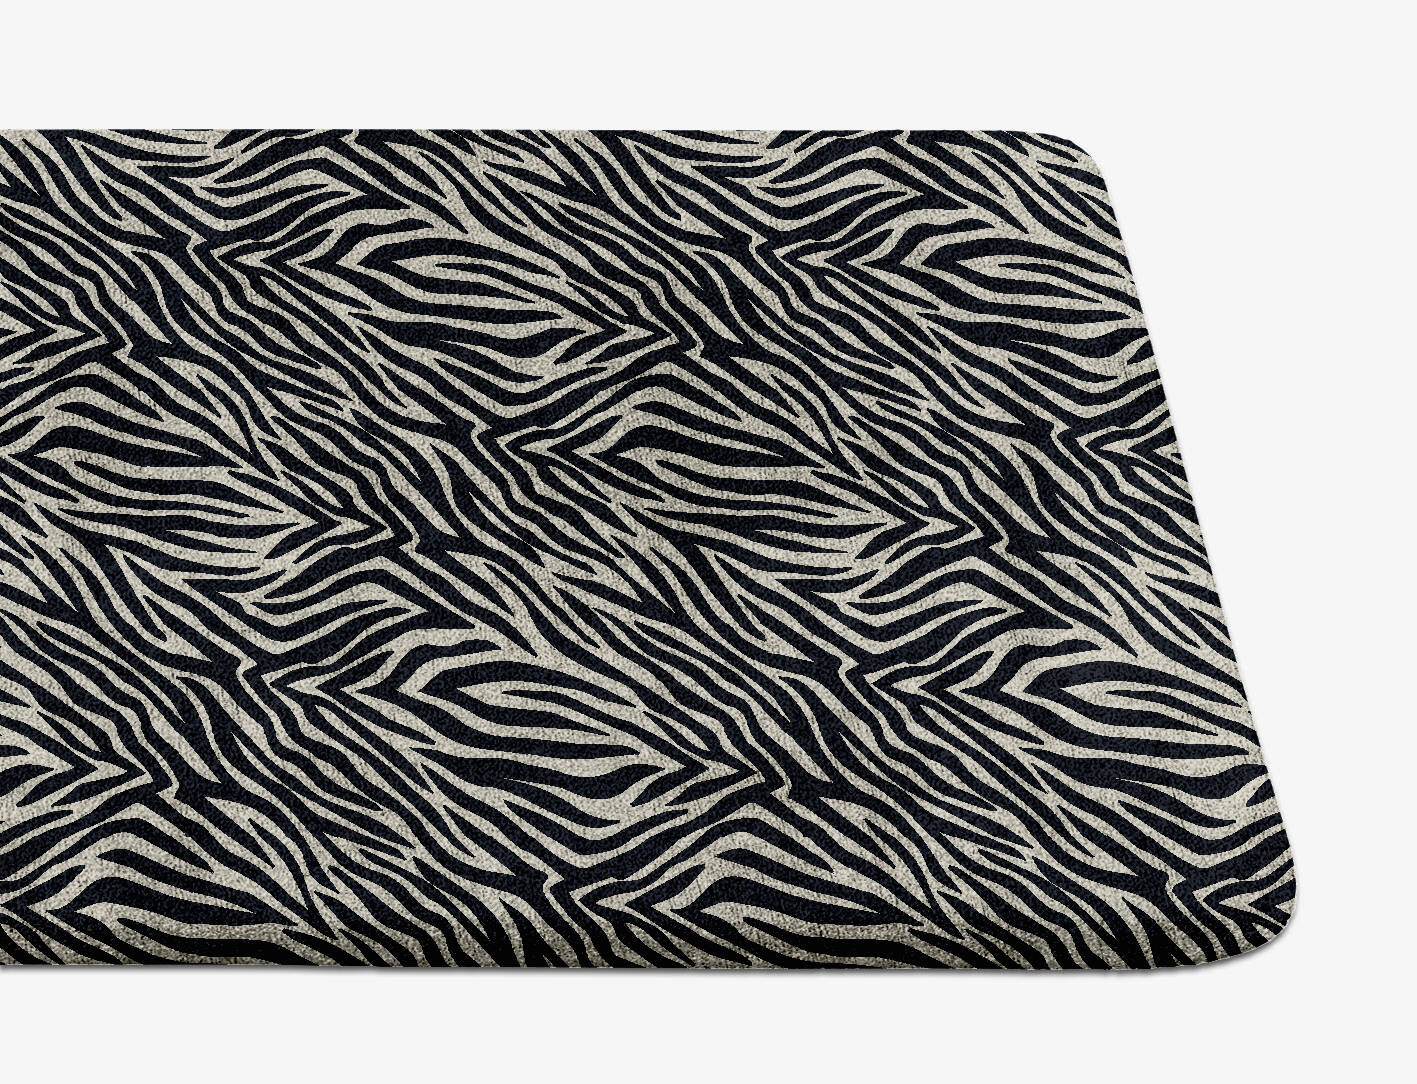 Zebra Hide Animal Prints Runner Hand Tufted Bamboo Silk Custom Rug by Rug Artisan